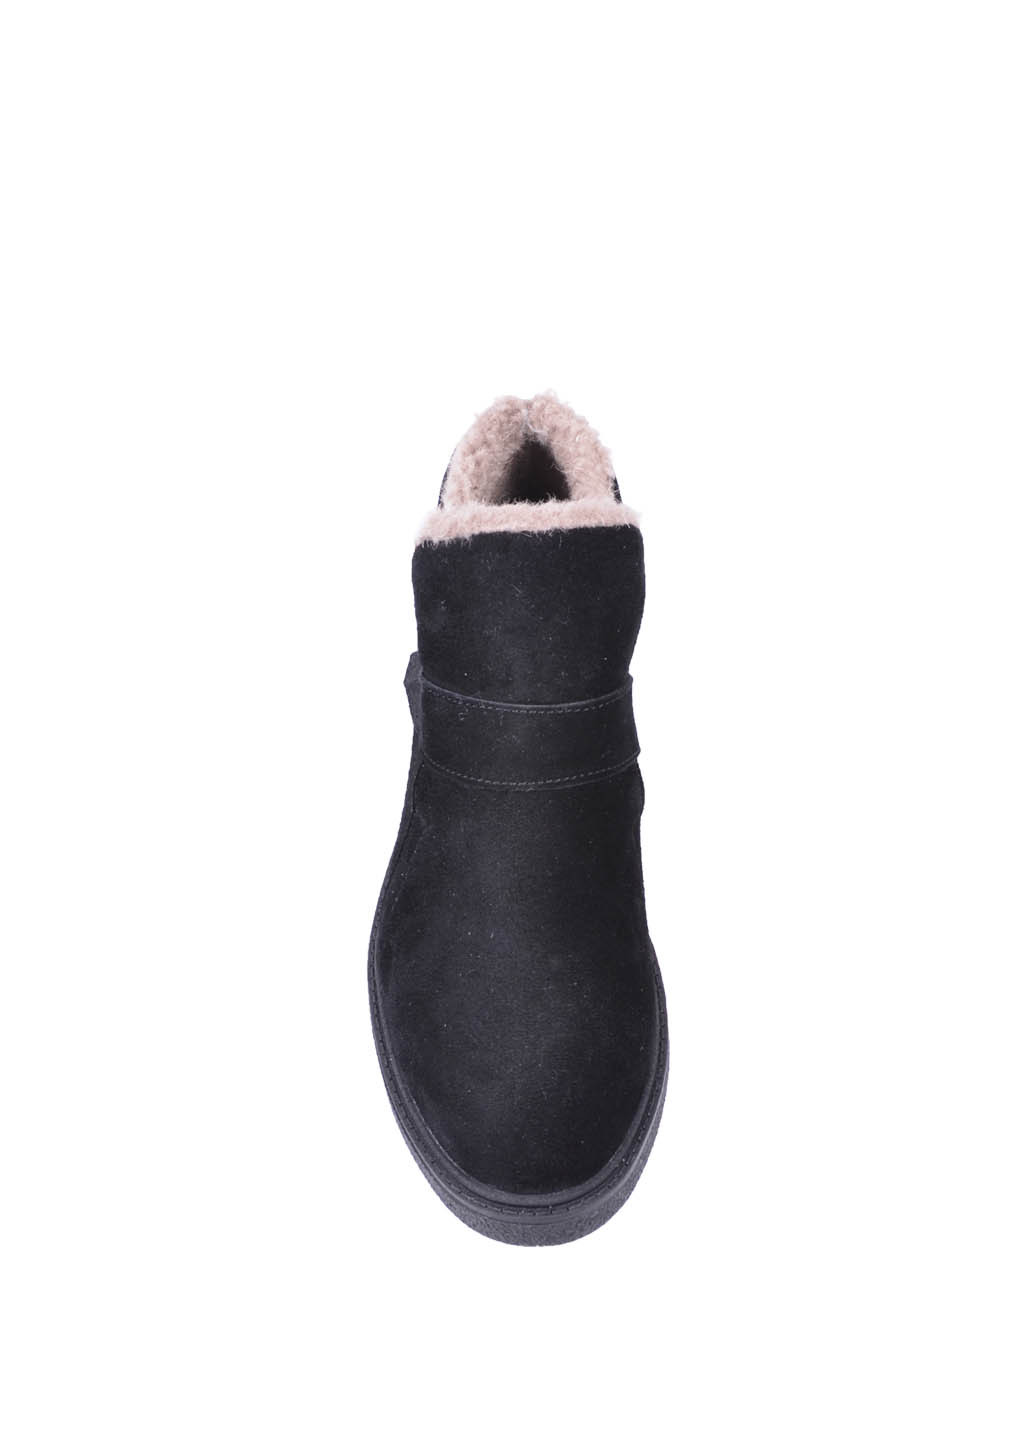 Зимние женские зимние ботинки дезерты Irbis из натуральной замши